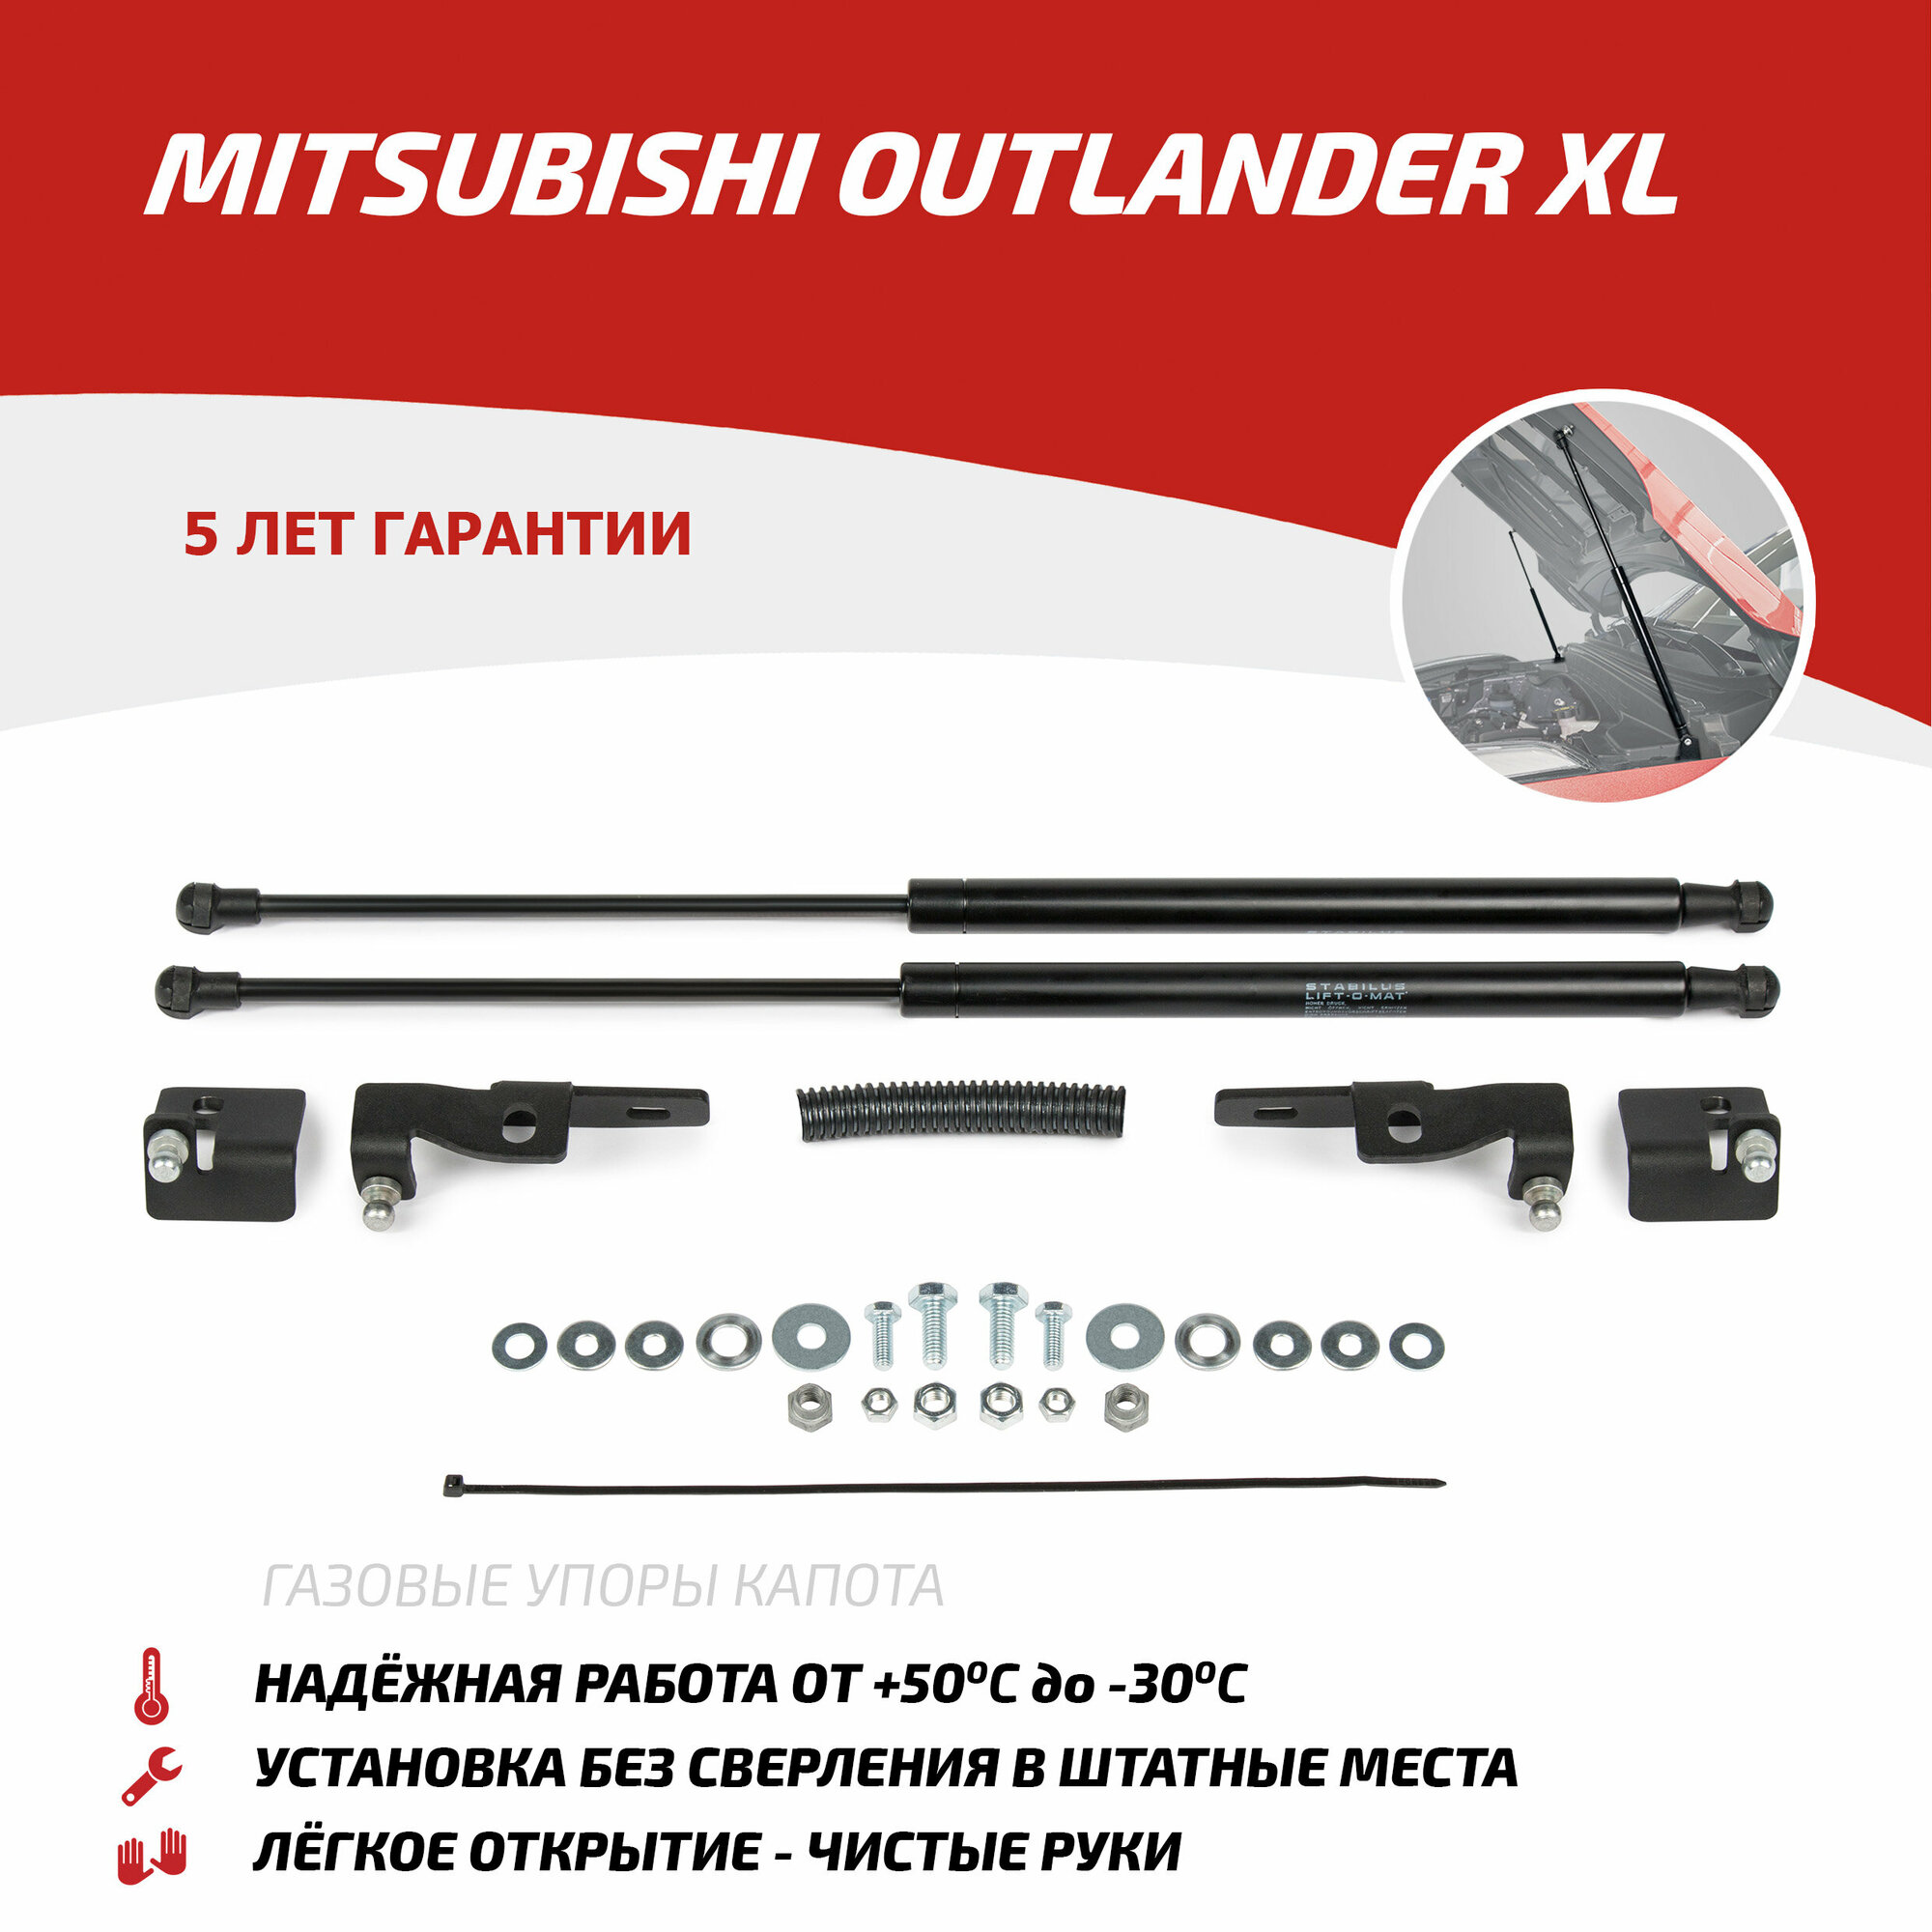 Газовые упоры капота АвтоУпор для Mitsubishi Outlander XL 2005-2012, 2 шт, UMIOUT031